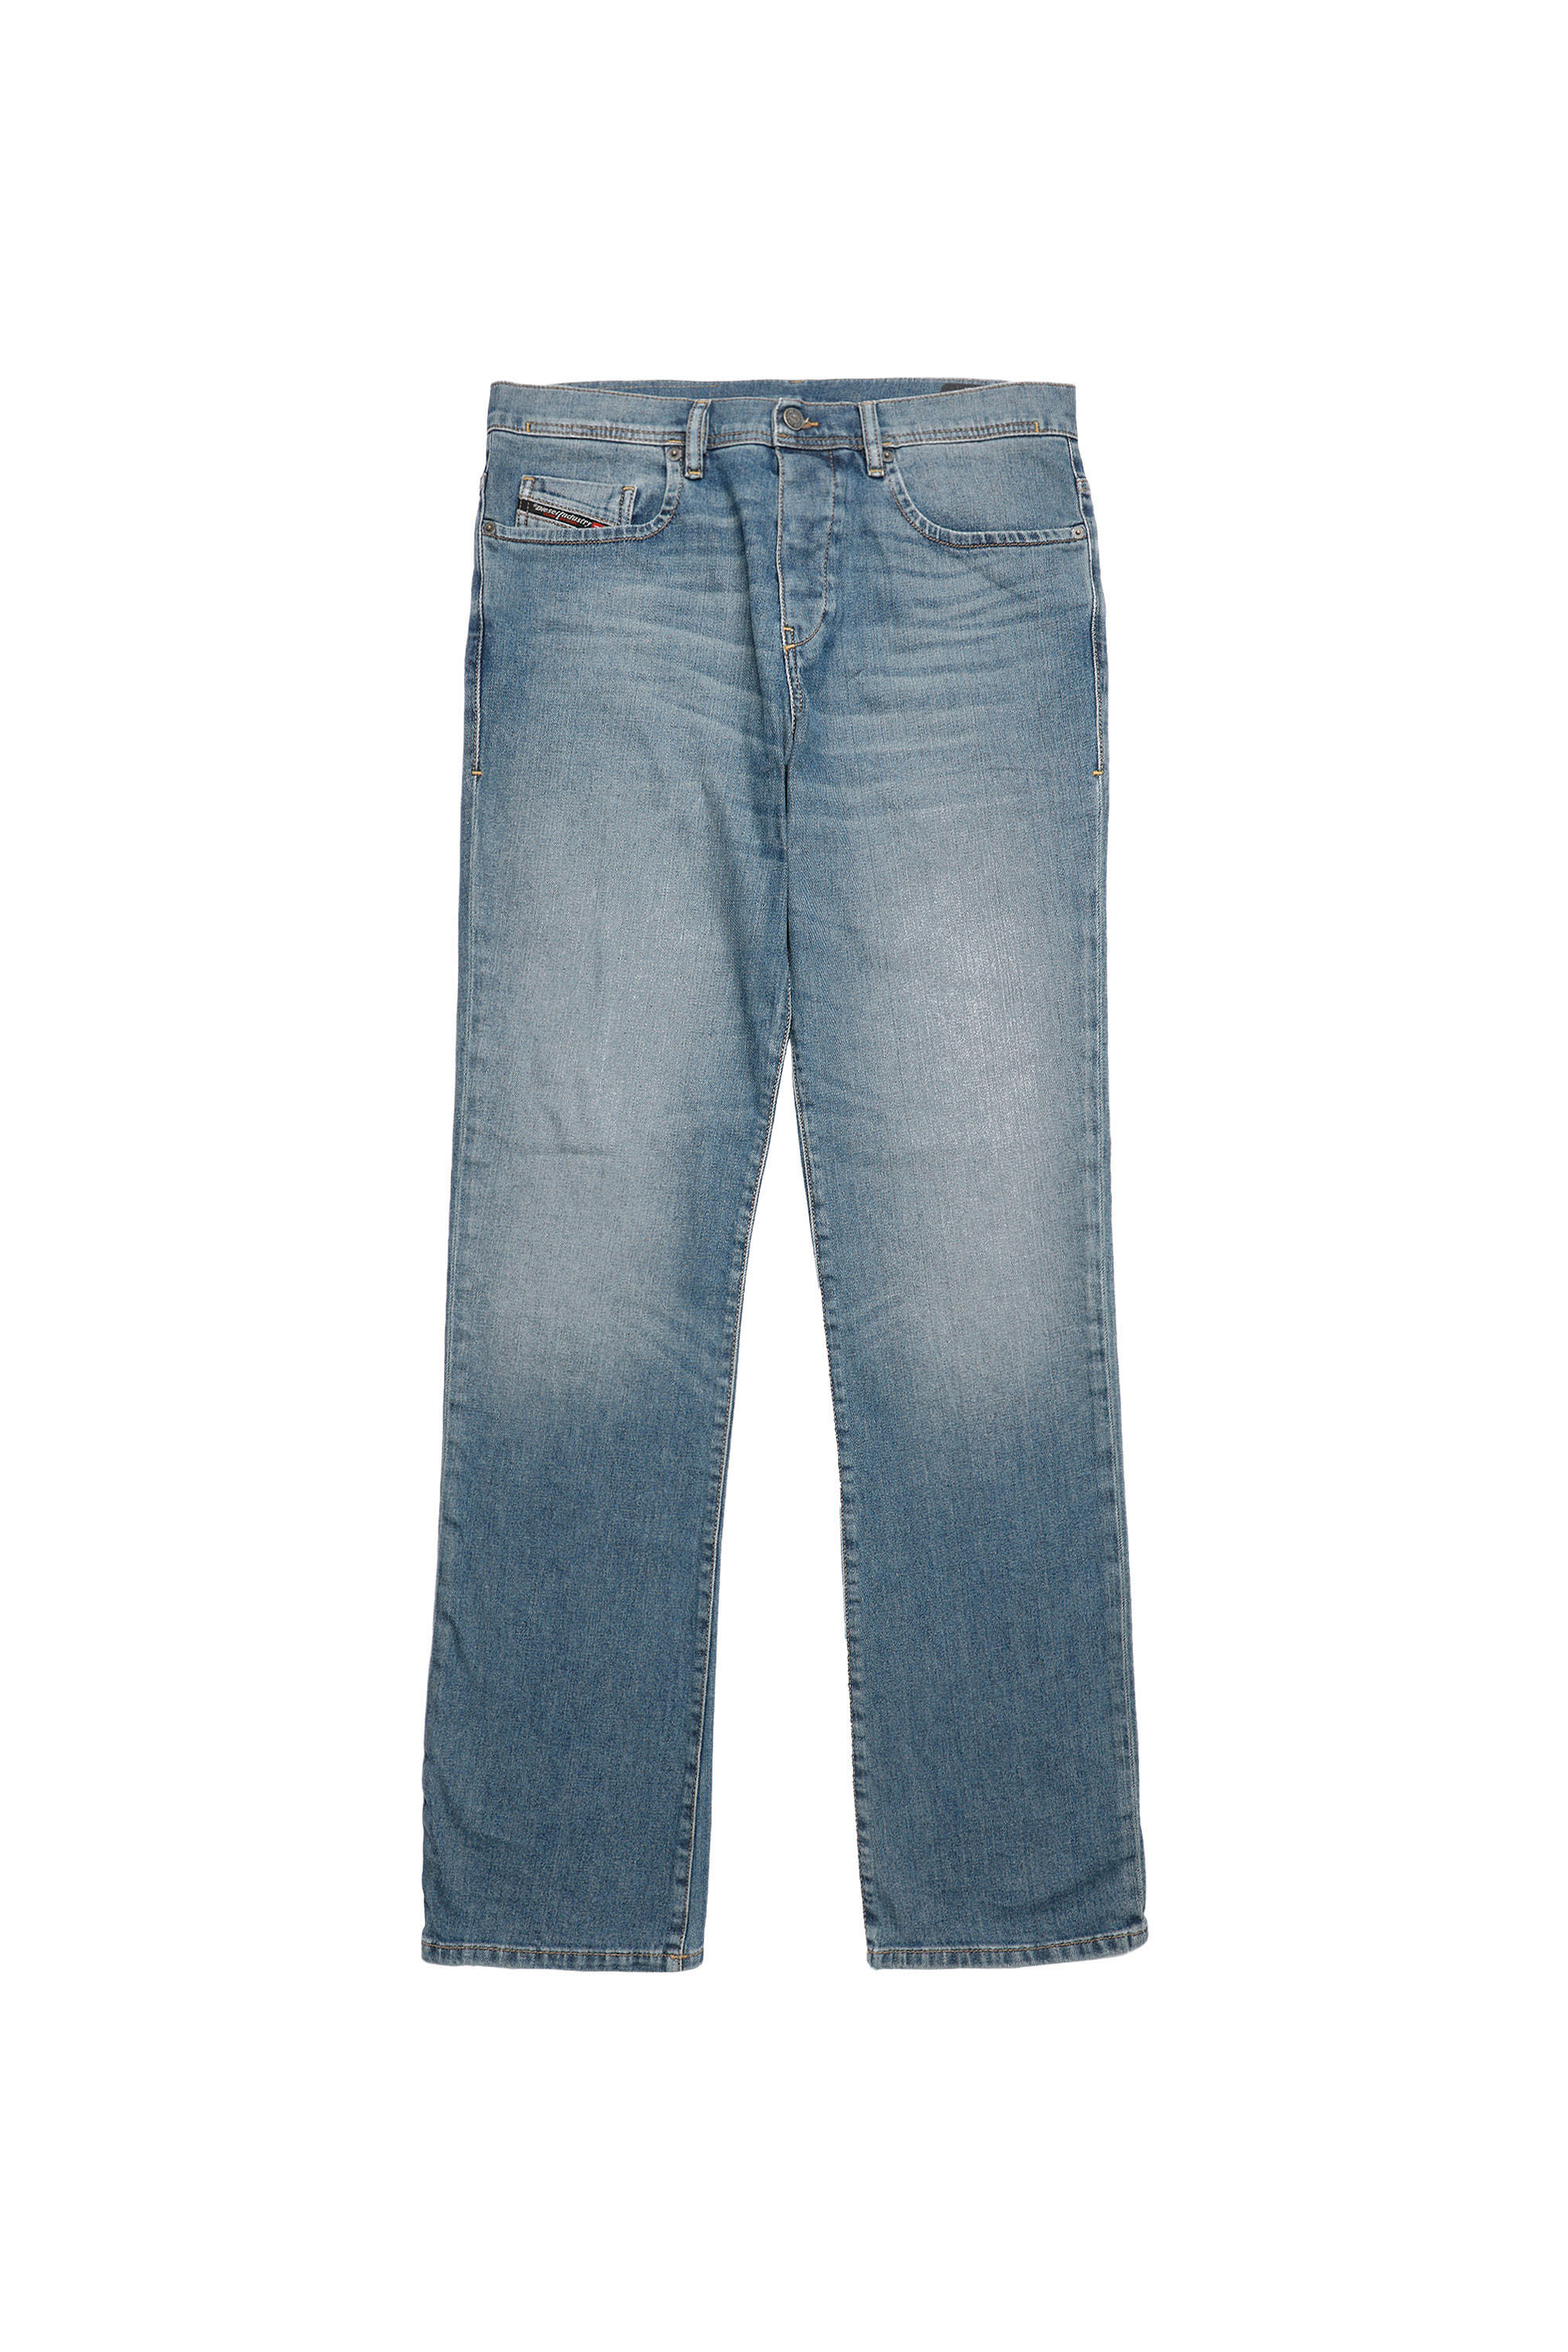 Diesel - D-Vocs 009EI Bootcut Jeans,  - Image 2